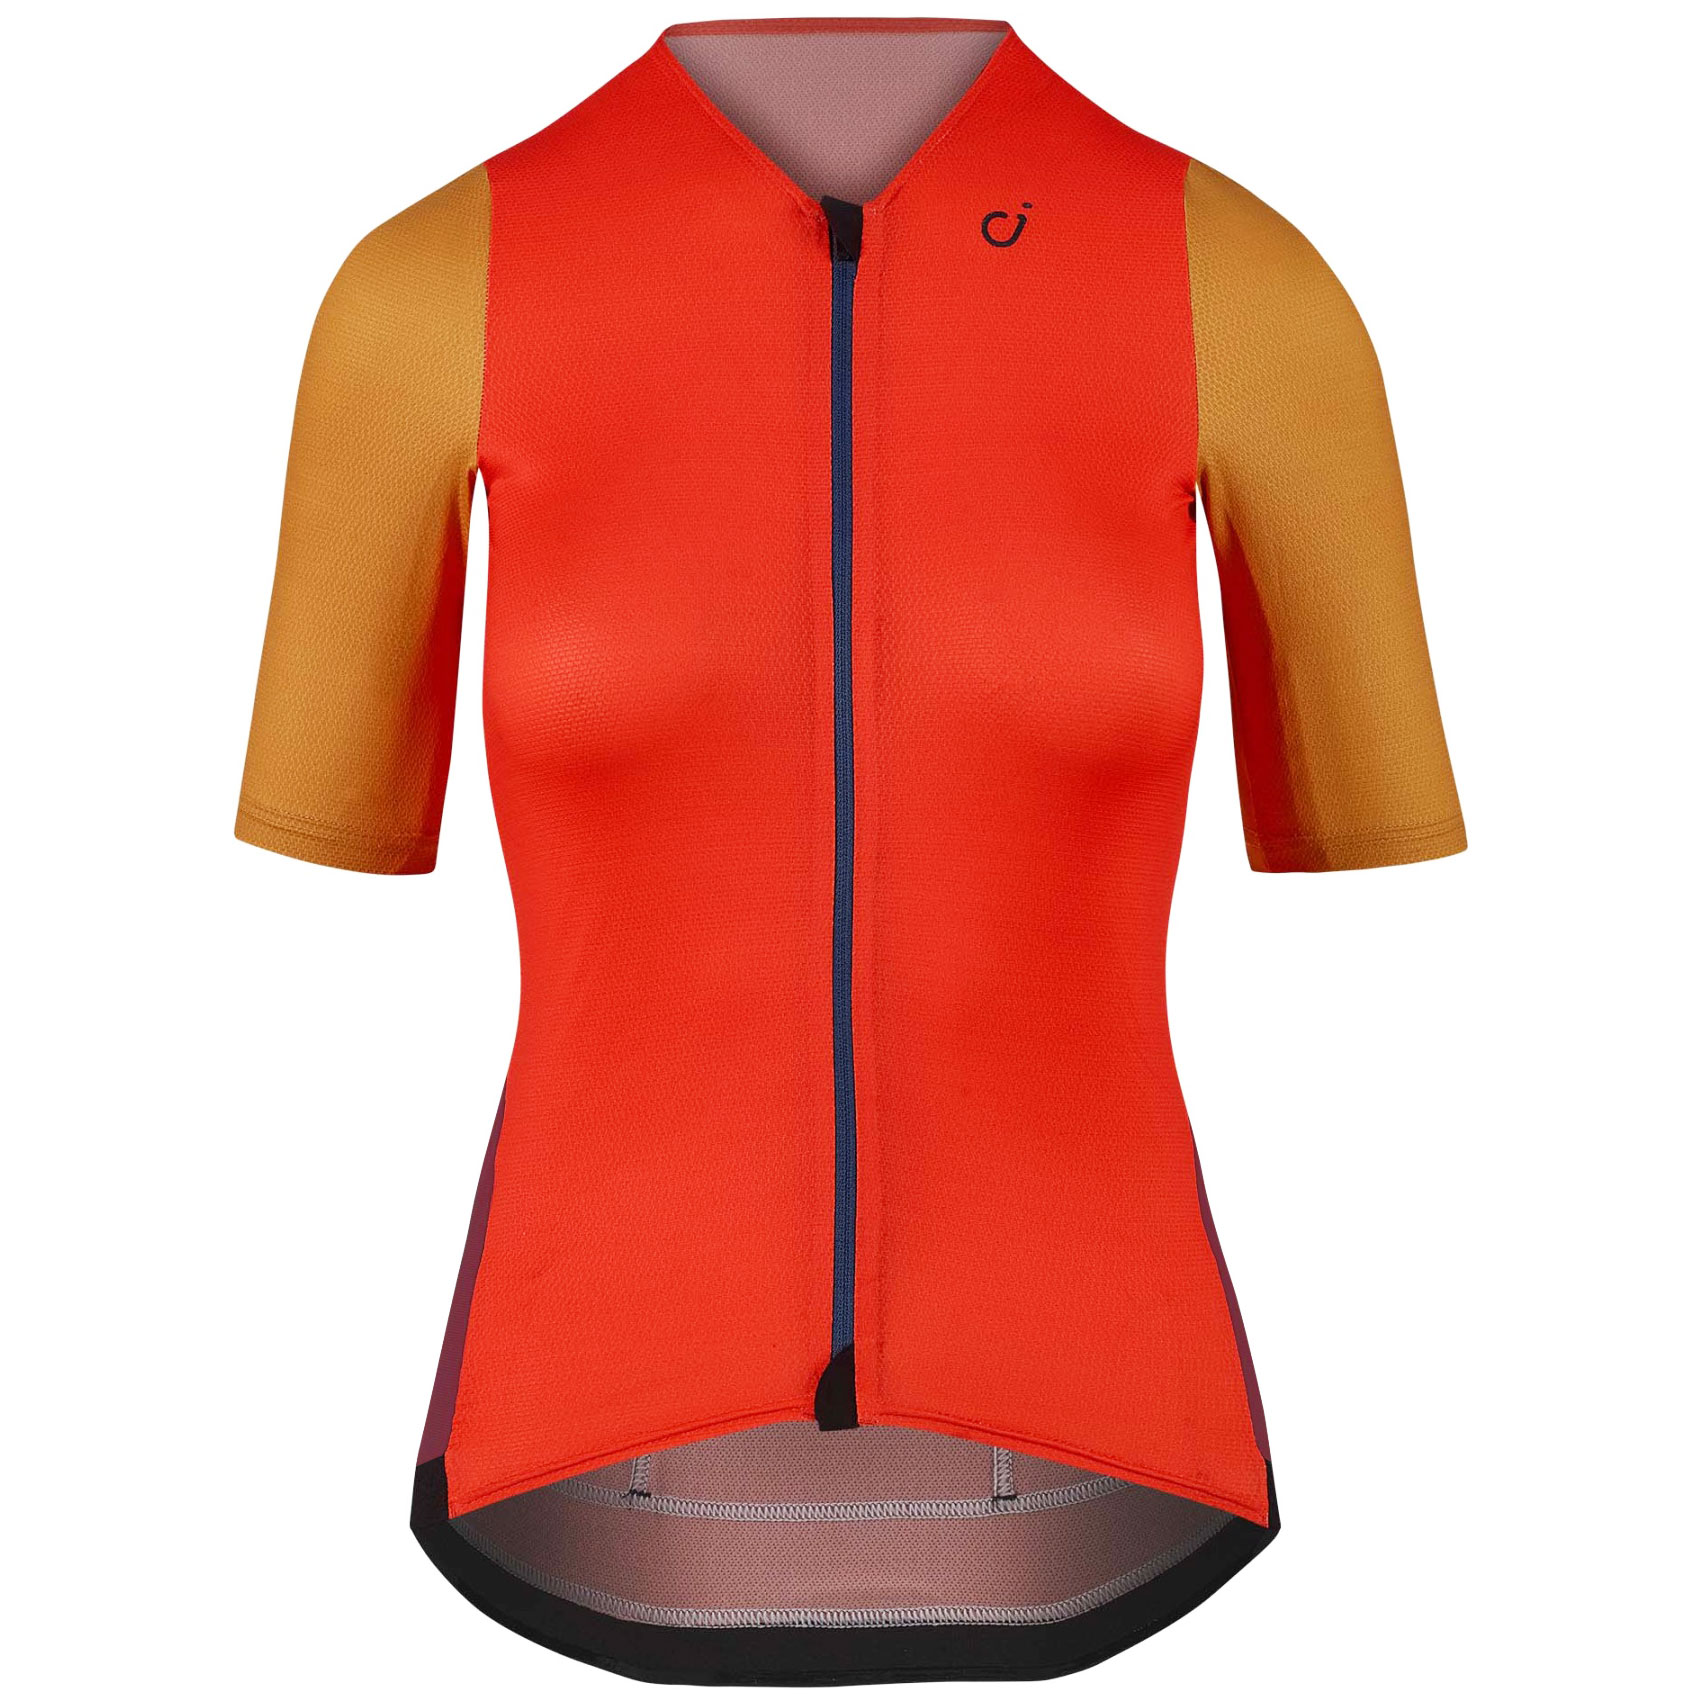 Produktbild von Velocio Concept SE Fahrradtrikot Damen - Fire Red